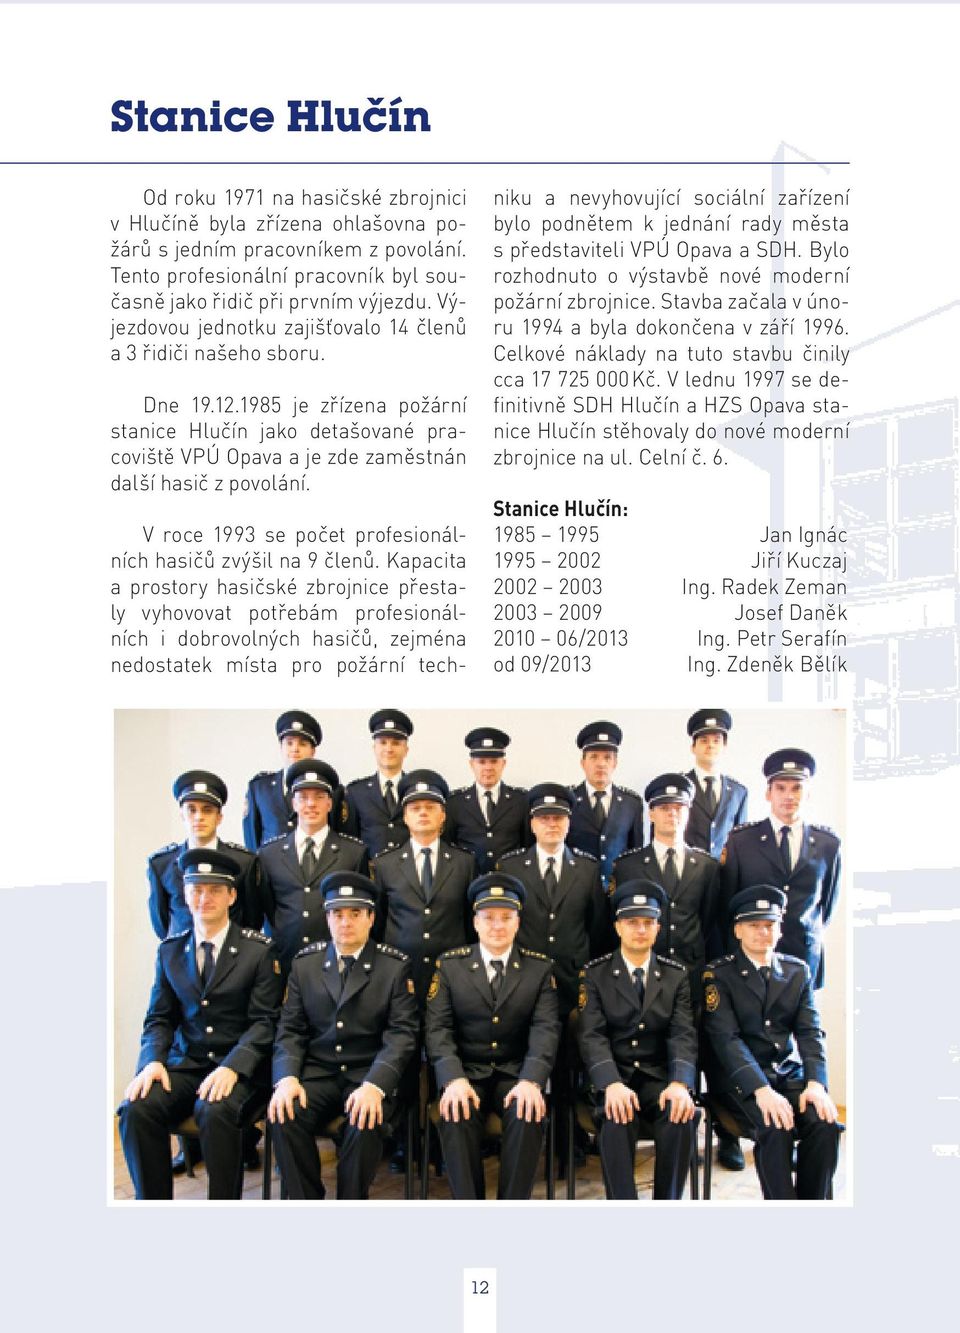 V roce 1993 se počet profesionálních hasičů zvýšil na 9 členů.